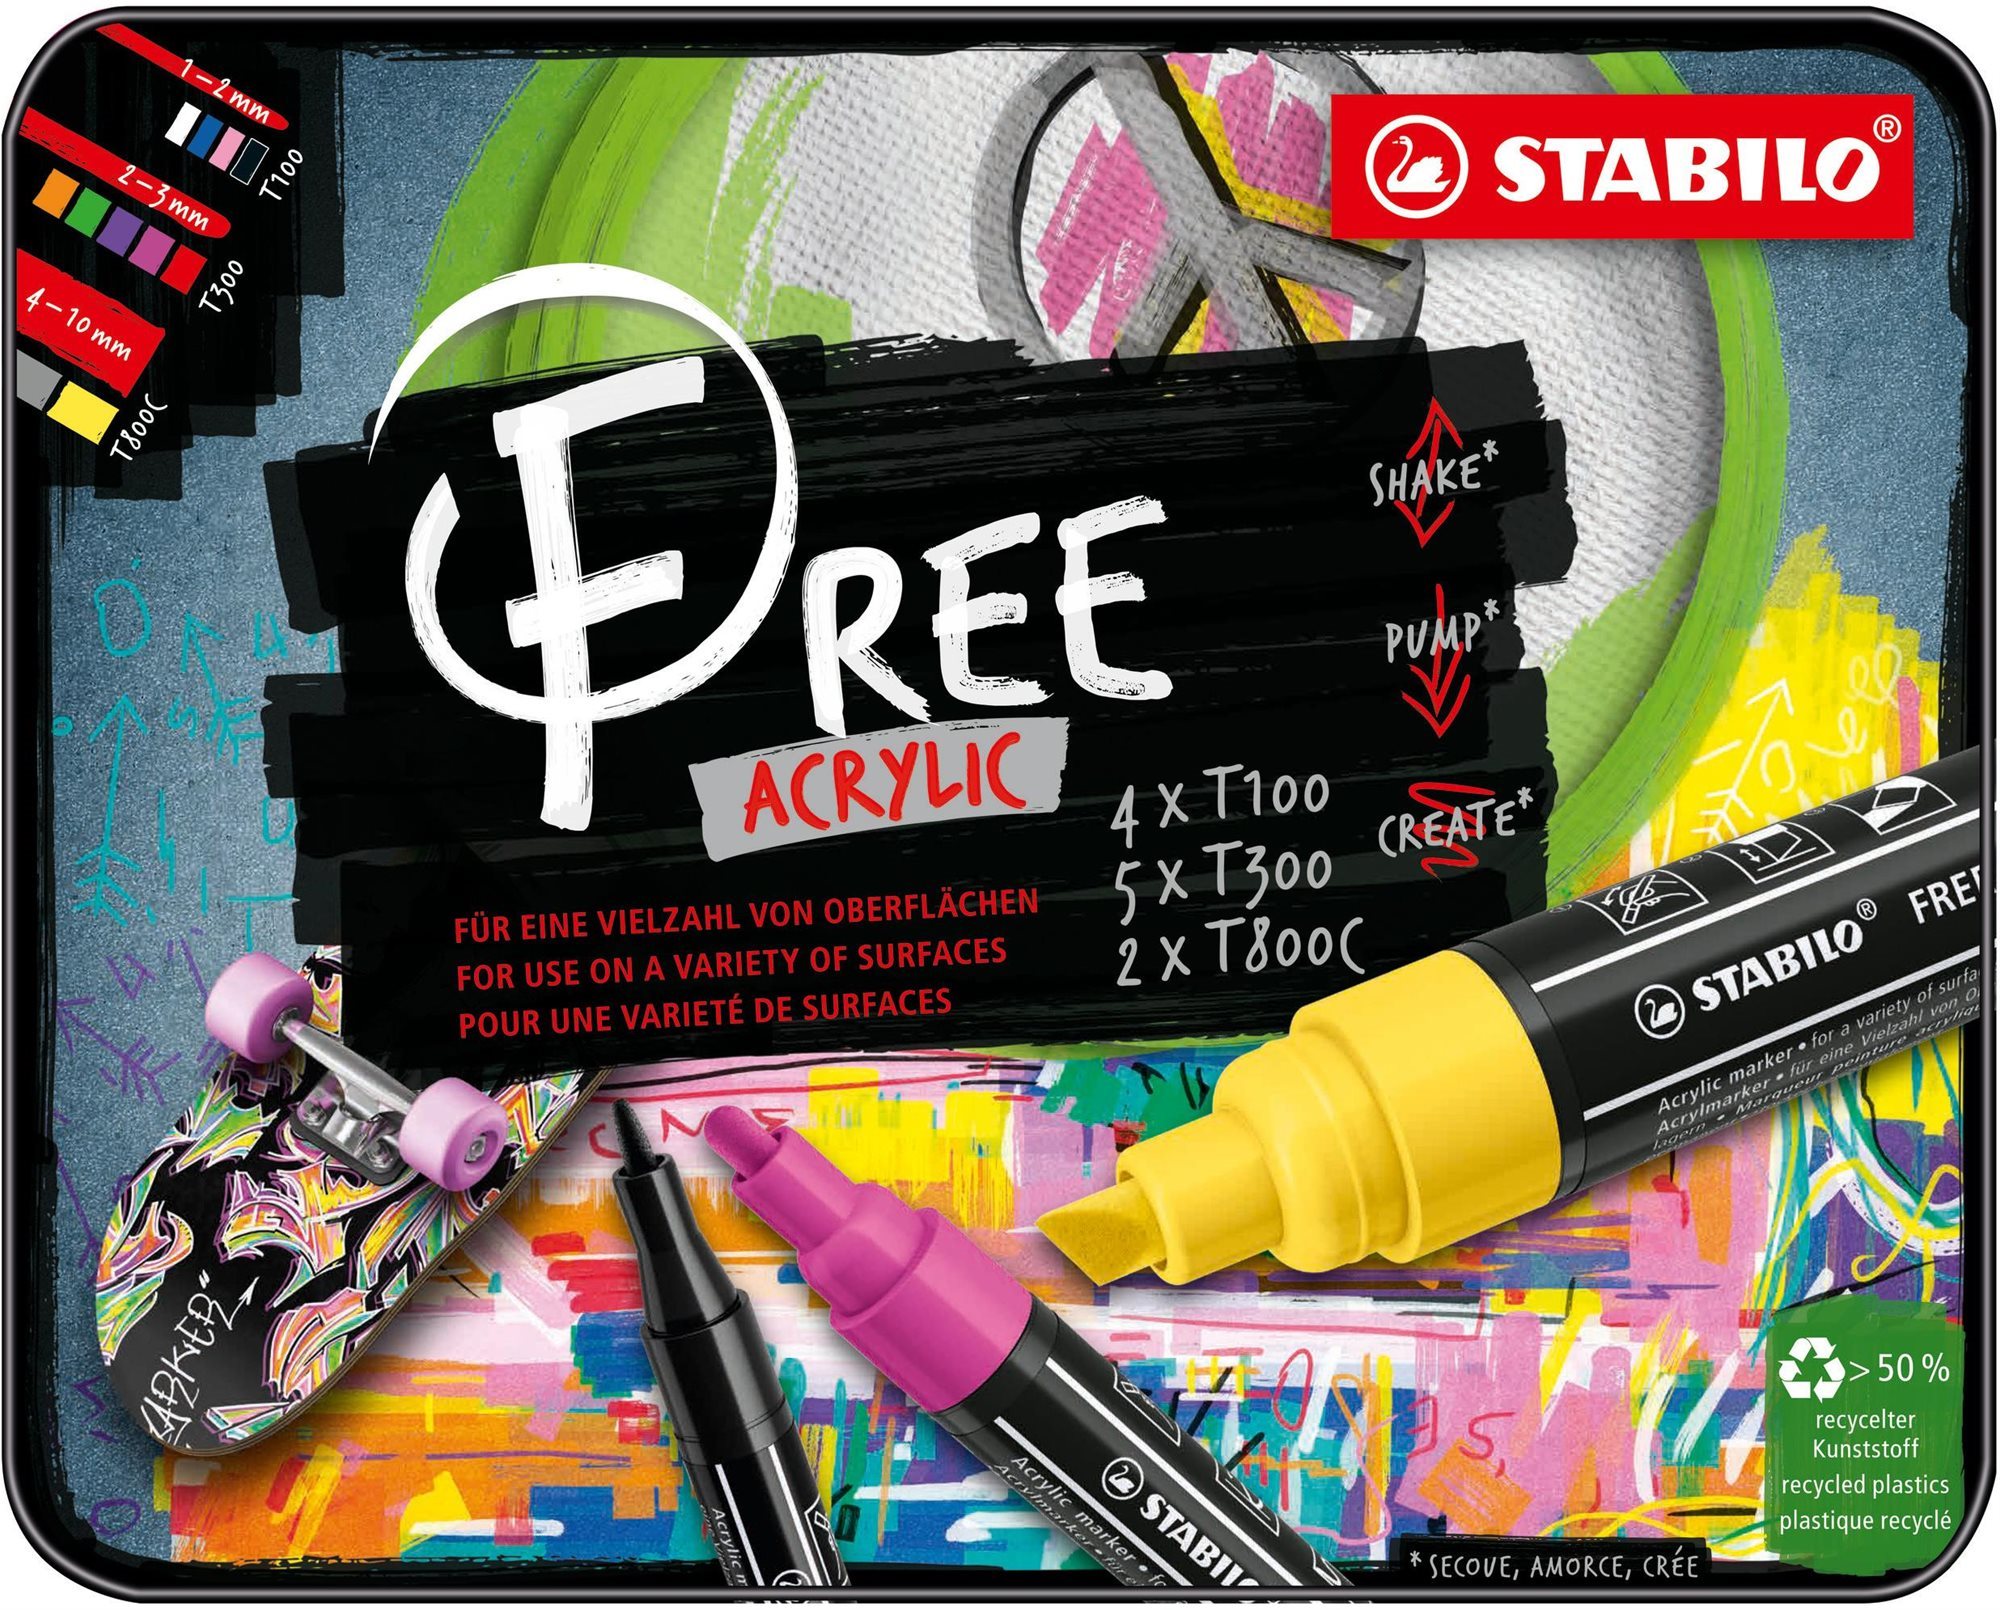 STABILO FREE Acrylic alapkészlet - 11 szín a csomagban - 3 különböző heggyel 4x T100, 5x T300, 2x T800C